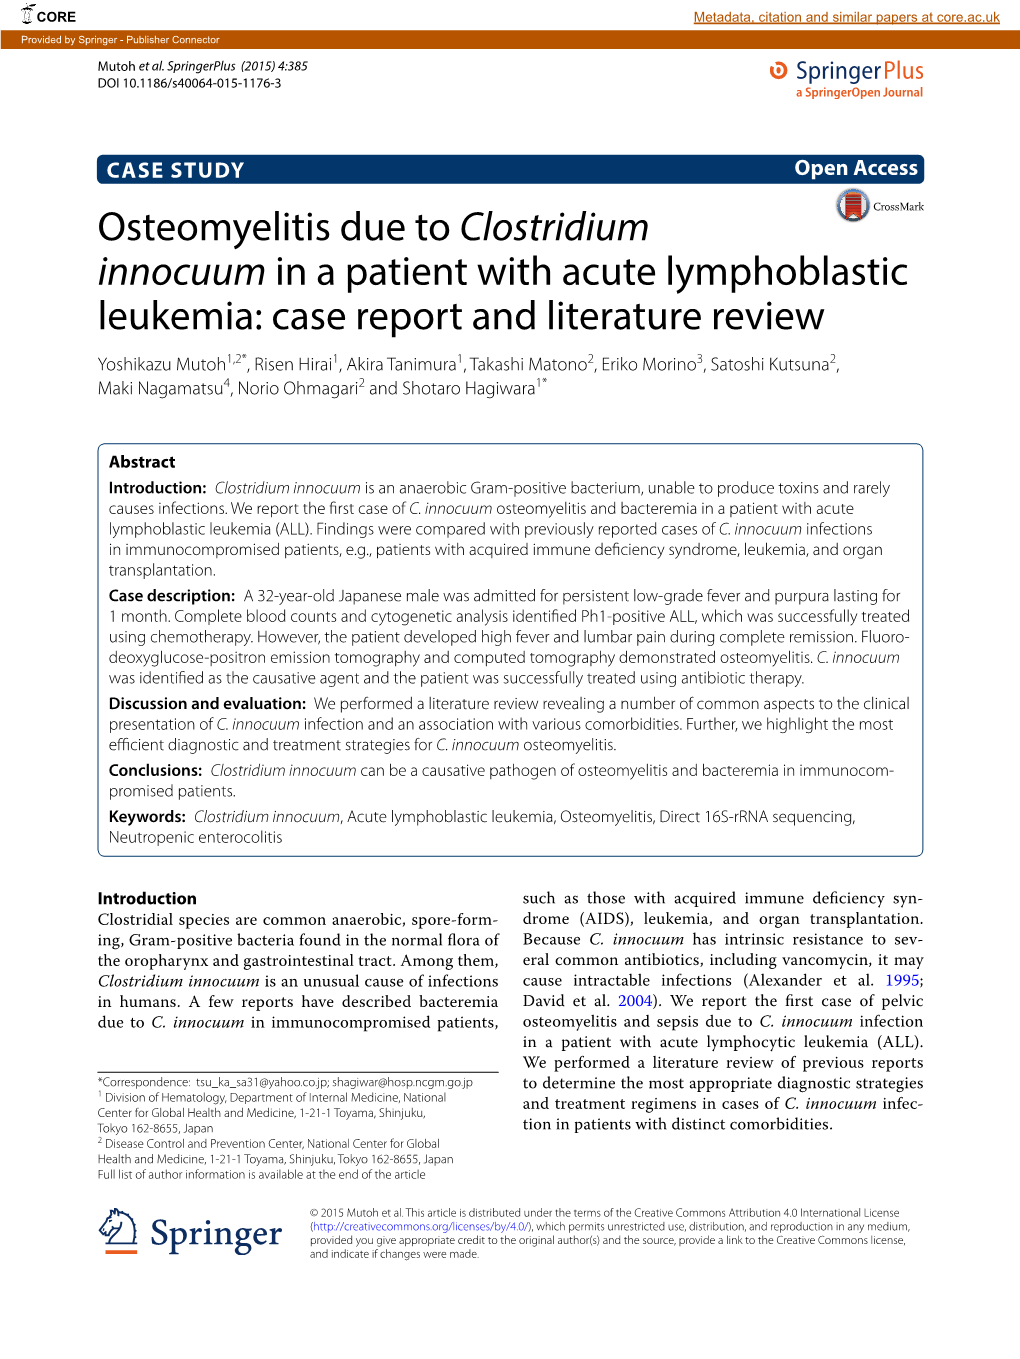 Osteomyelitis Due to Clostridium Innocuum in a Patient With